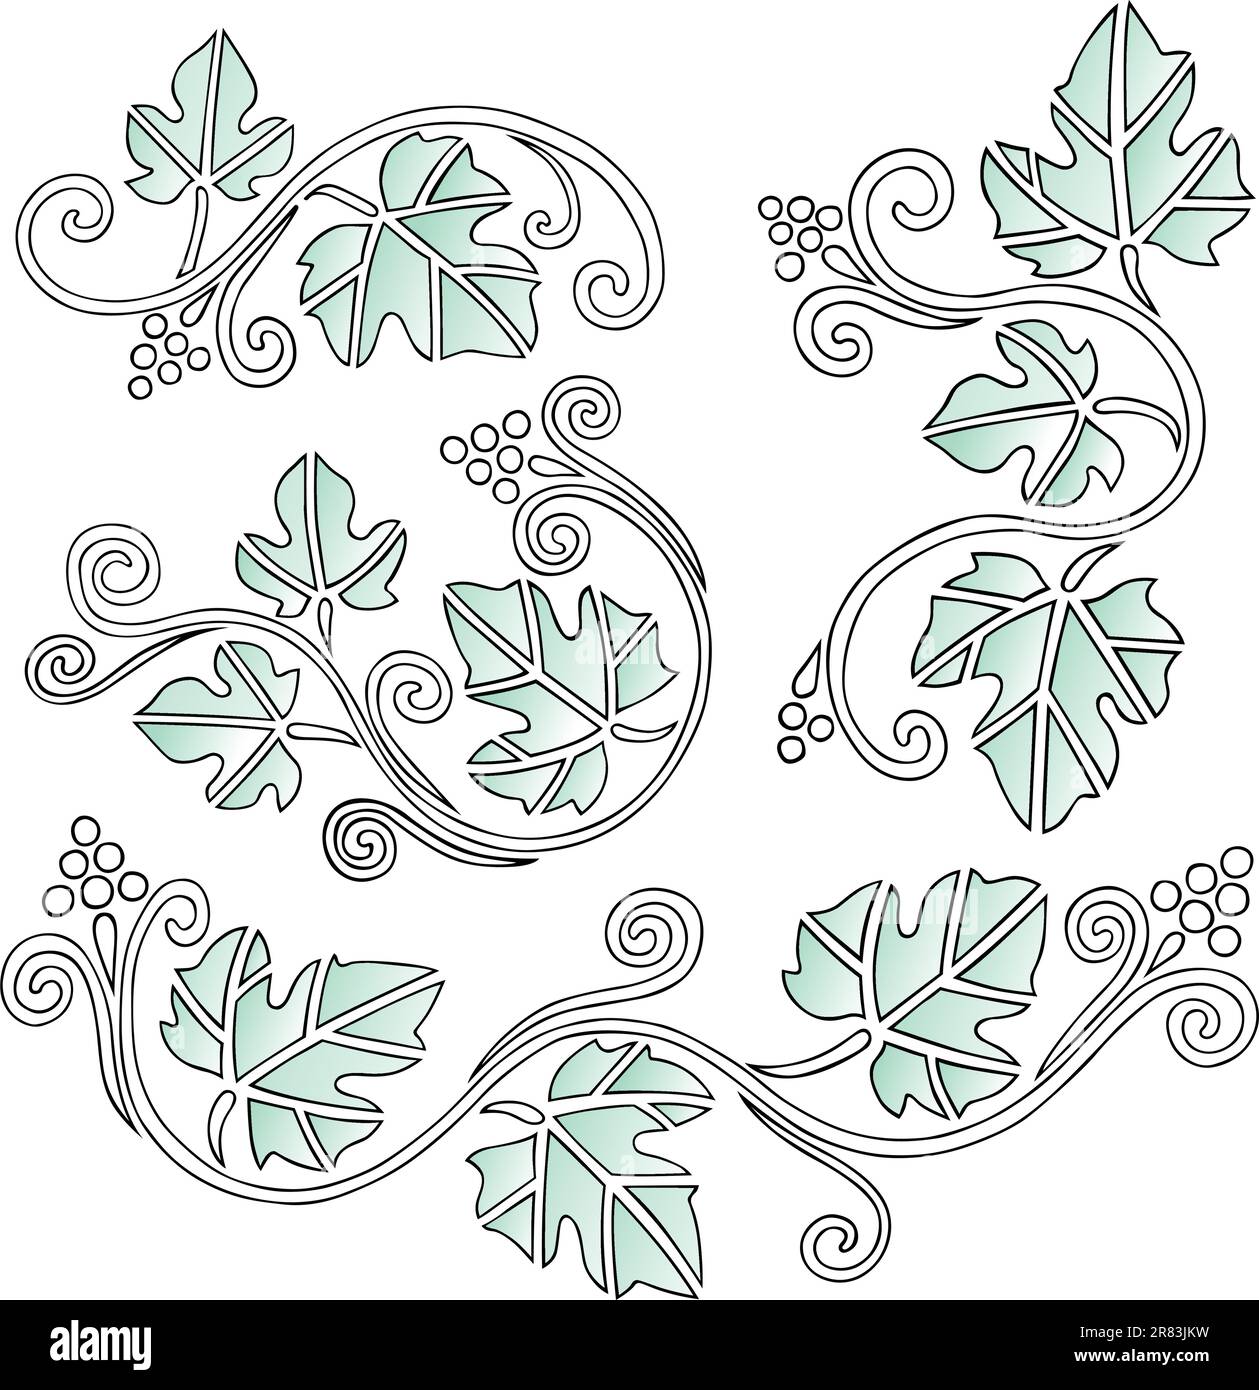 Éléments de dessin de raisin avec feuilles sur fond blanc Illustration de Vecteur